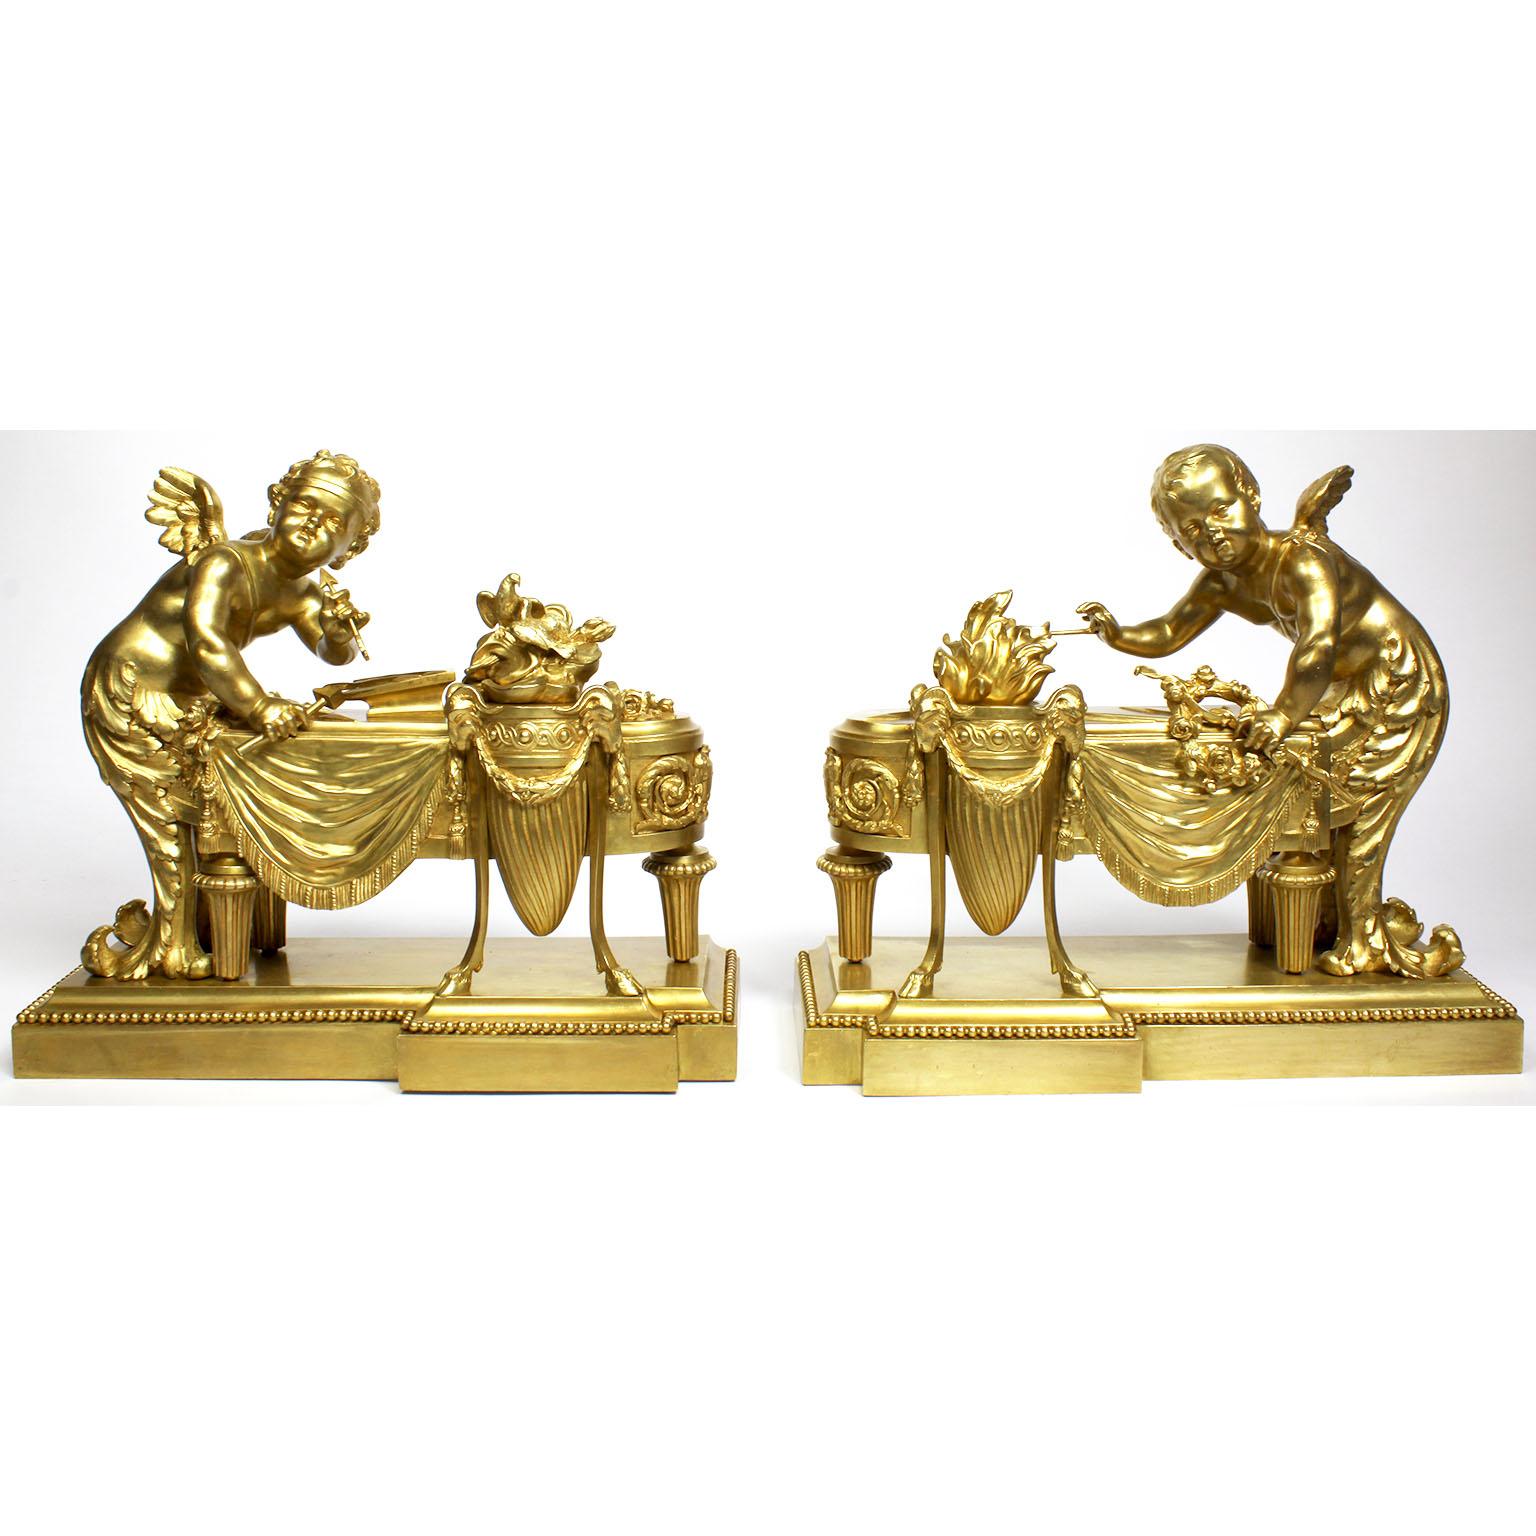 Une très belle et charmante paire de chenets français de style Louis XV Belle Époque du 19-20e siècle en bronze doré. Les chenets en bronze doré finement ciselé et fantaisiste, chacun surmonté de la figure d'un cupidon ou d'un chérubin debout, les